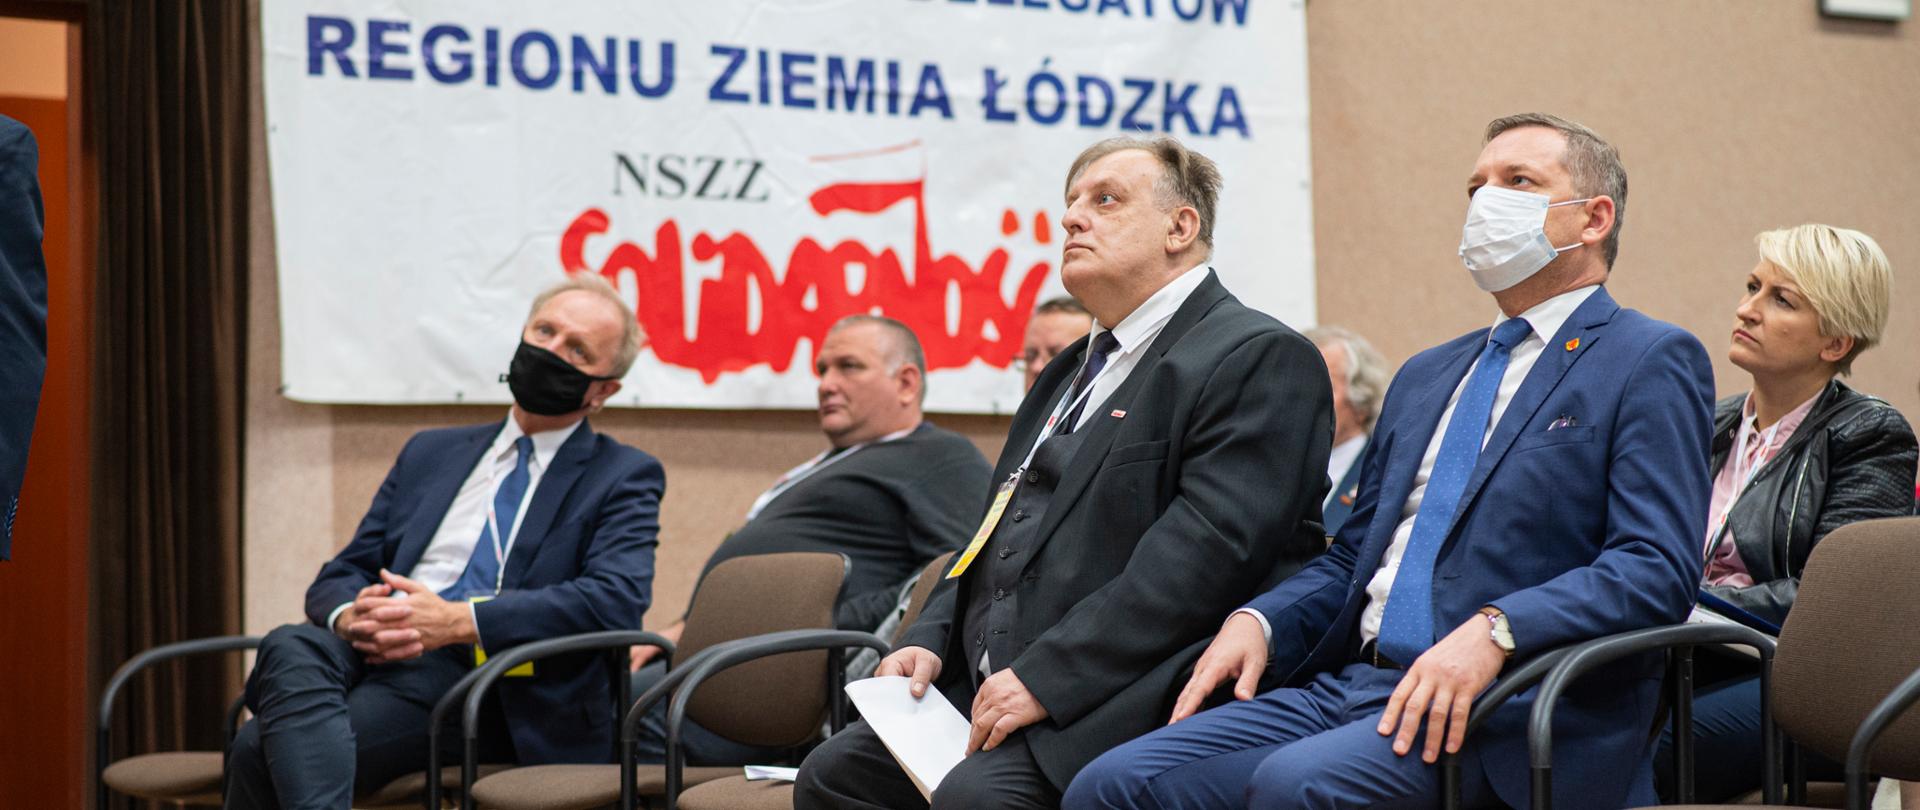 NSZZ „Solidarność” jest obecnie największym związkiem zawodowym w Polsce